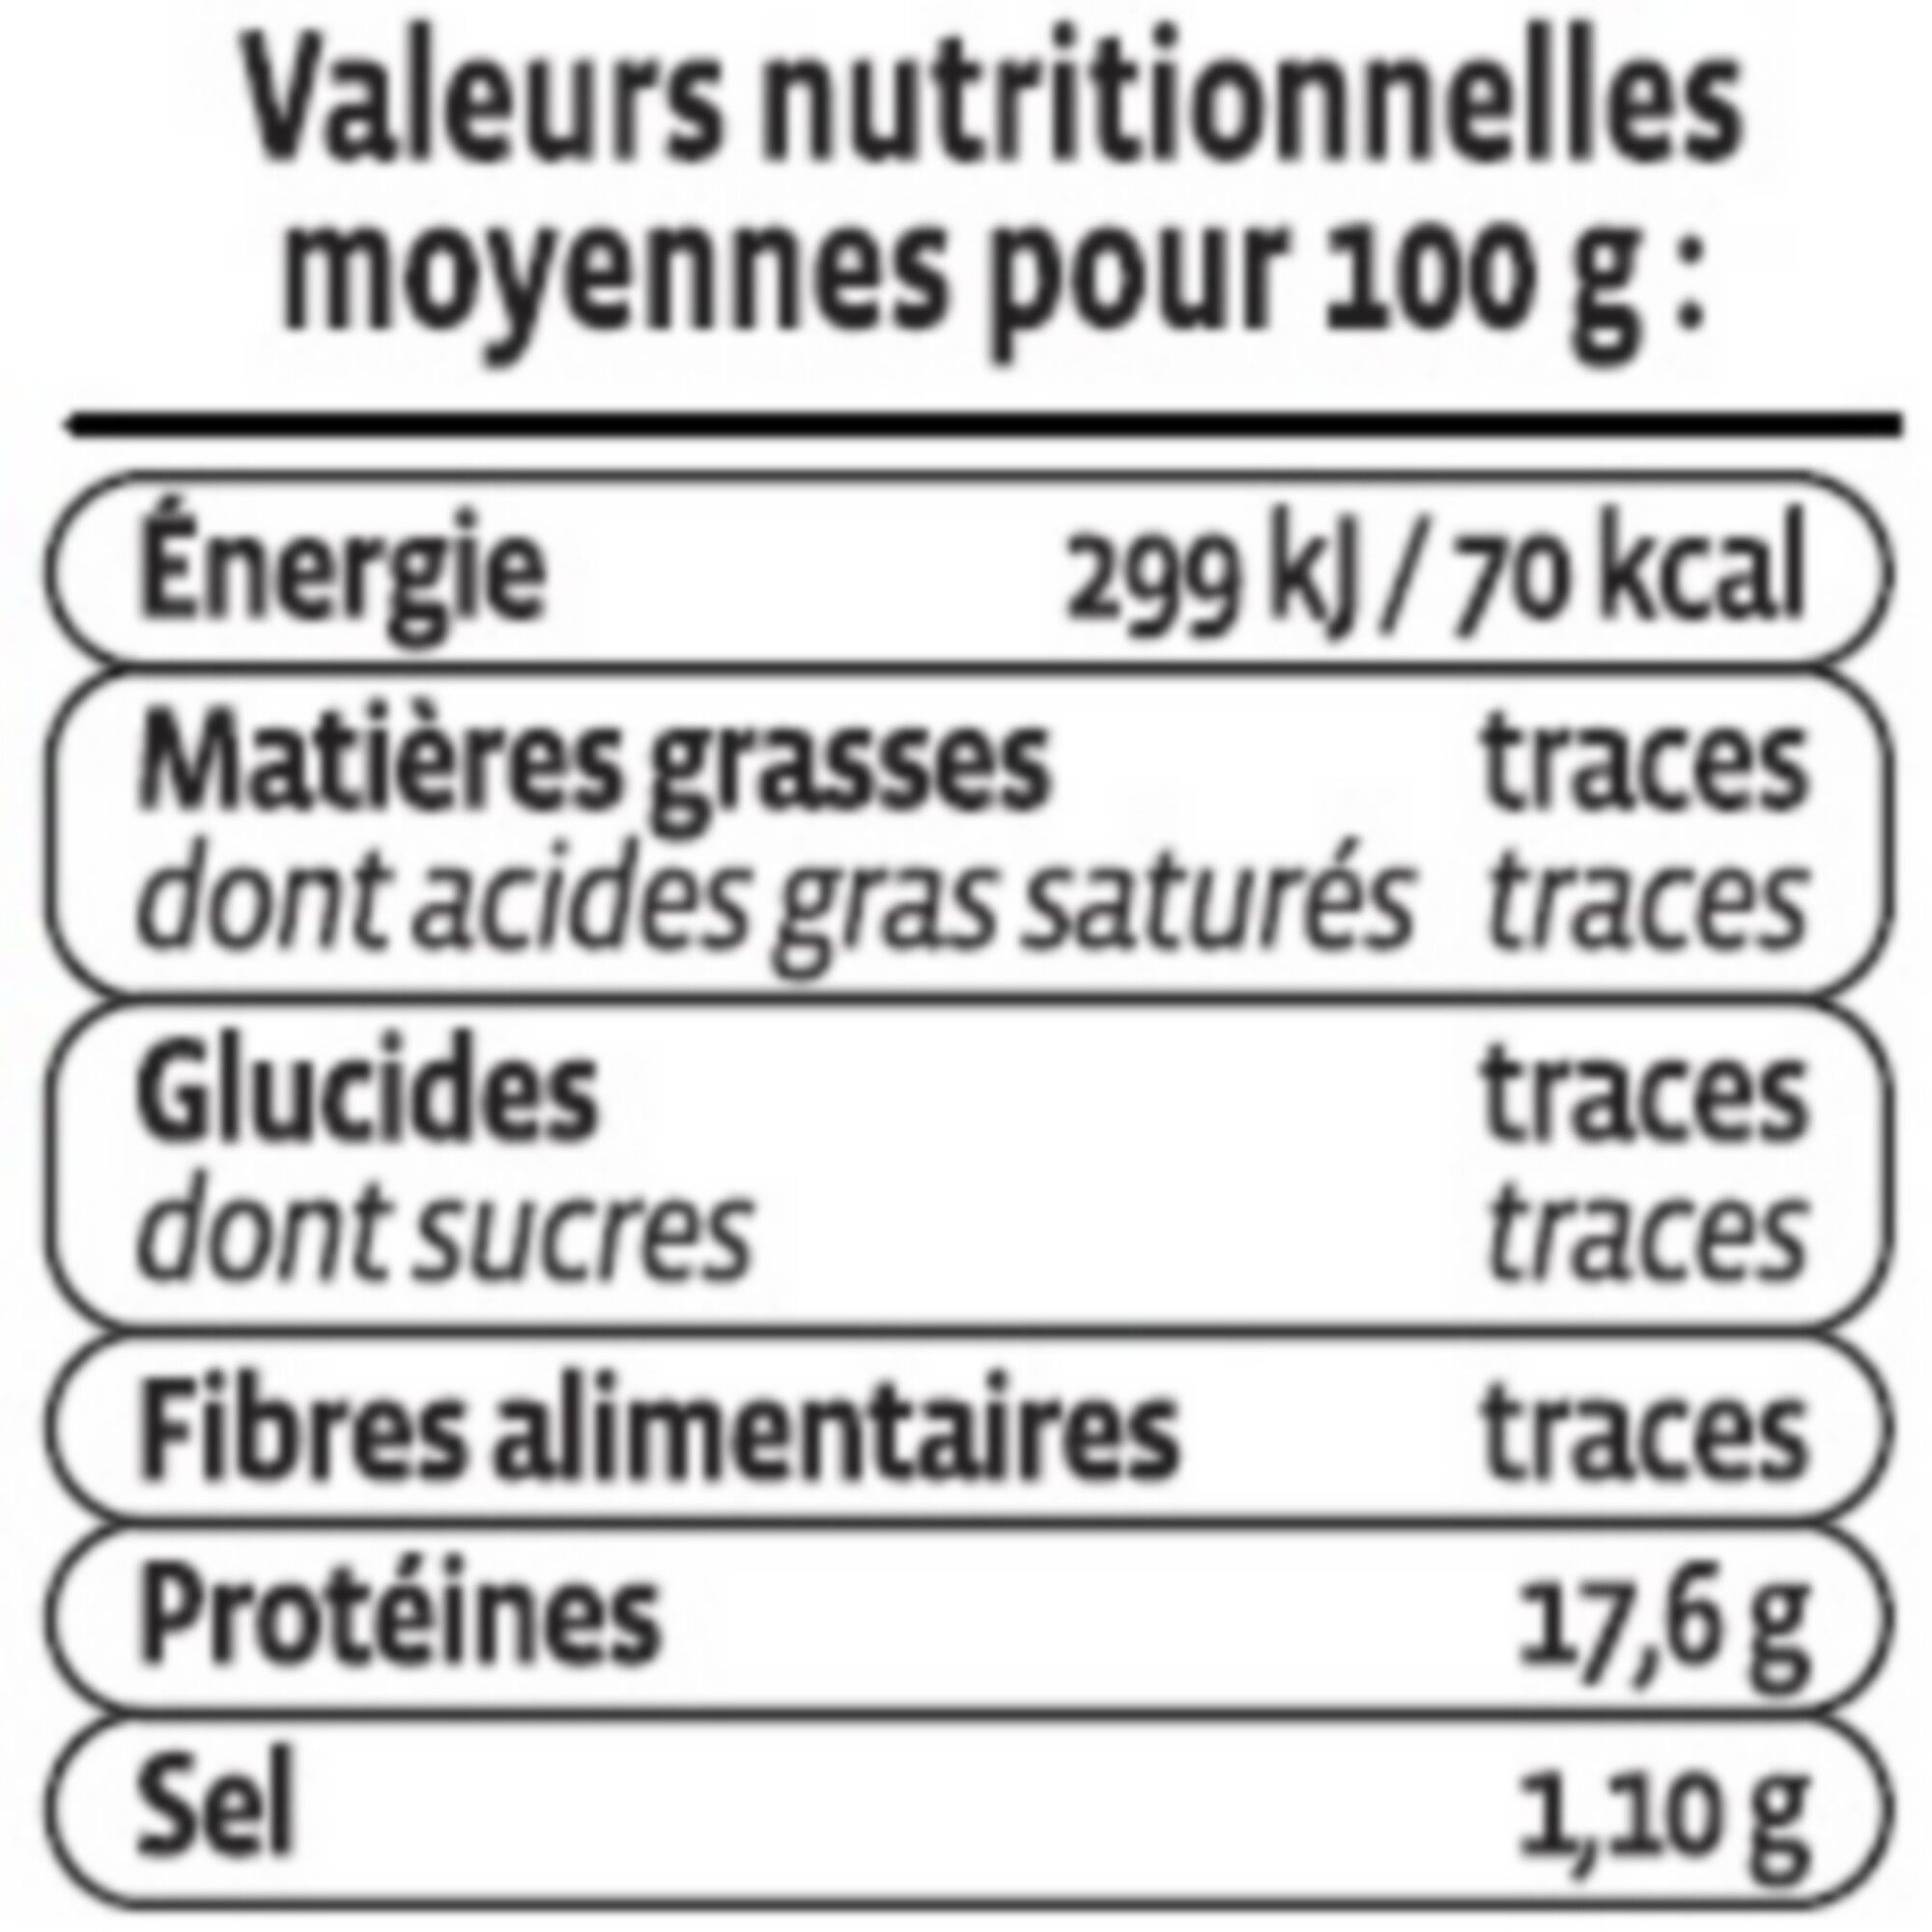 Dos de Cabillaud - Nutrition facts - fr